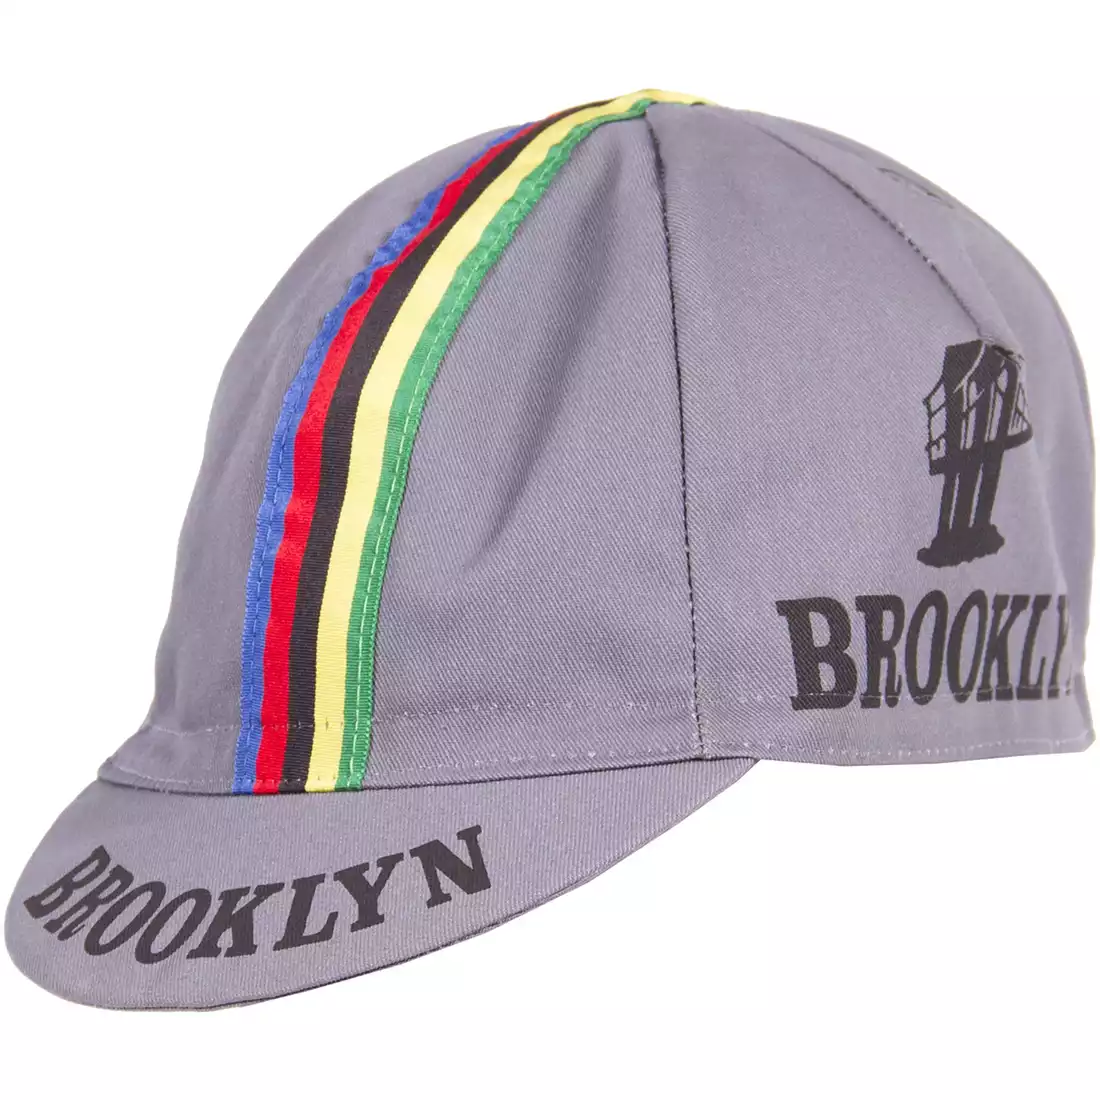 GIORDANA SS18 czapeczka kolarska - Brooklyn -  Gray w/ Stripe tape  GI-S6-COCA-BROK-GRAY one size